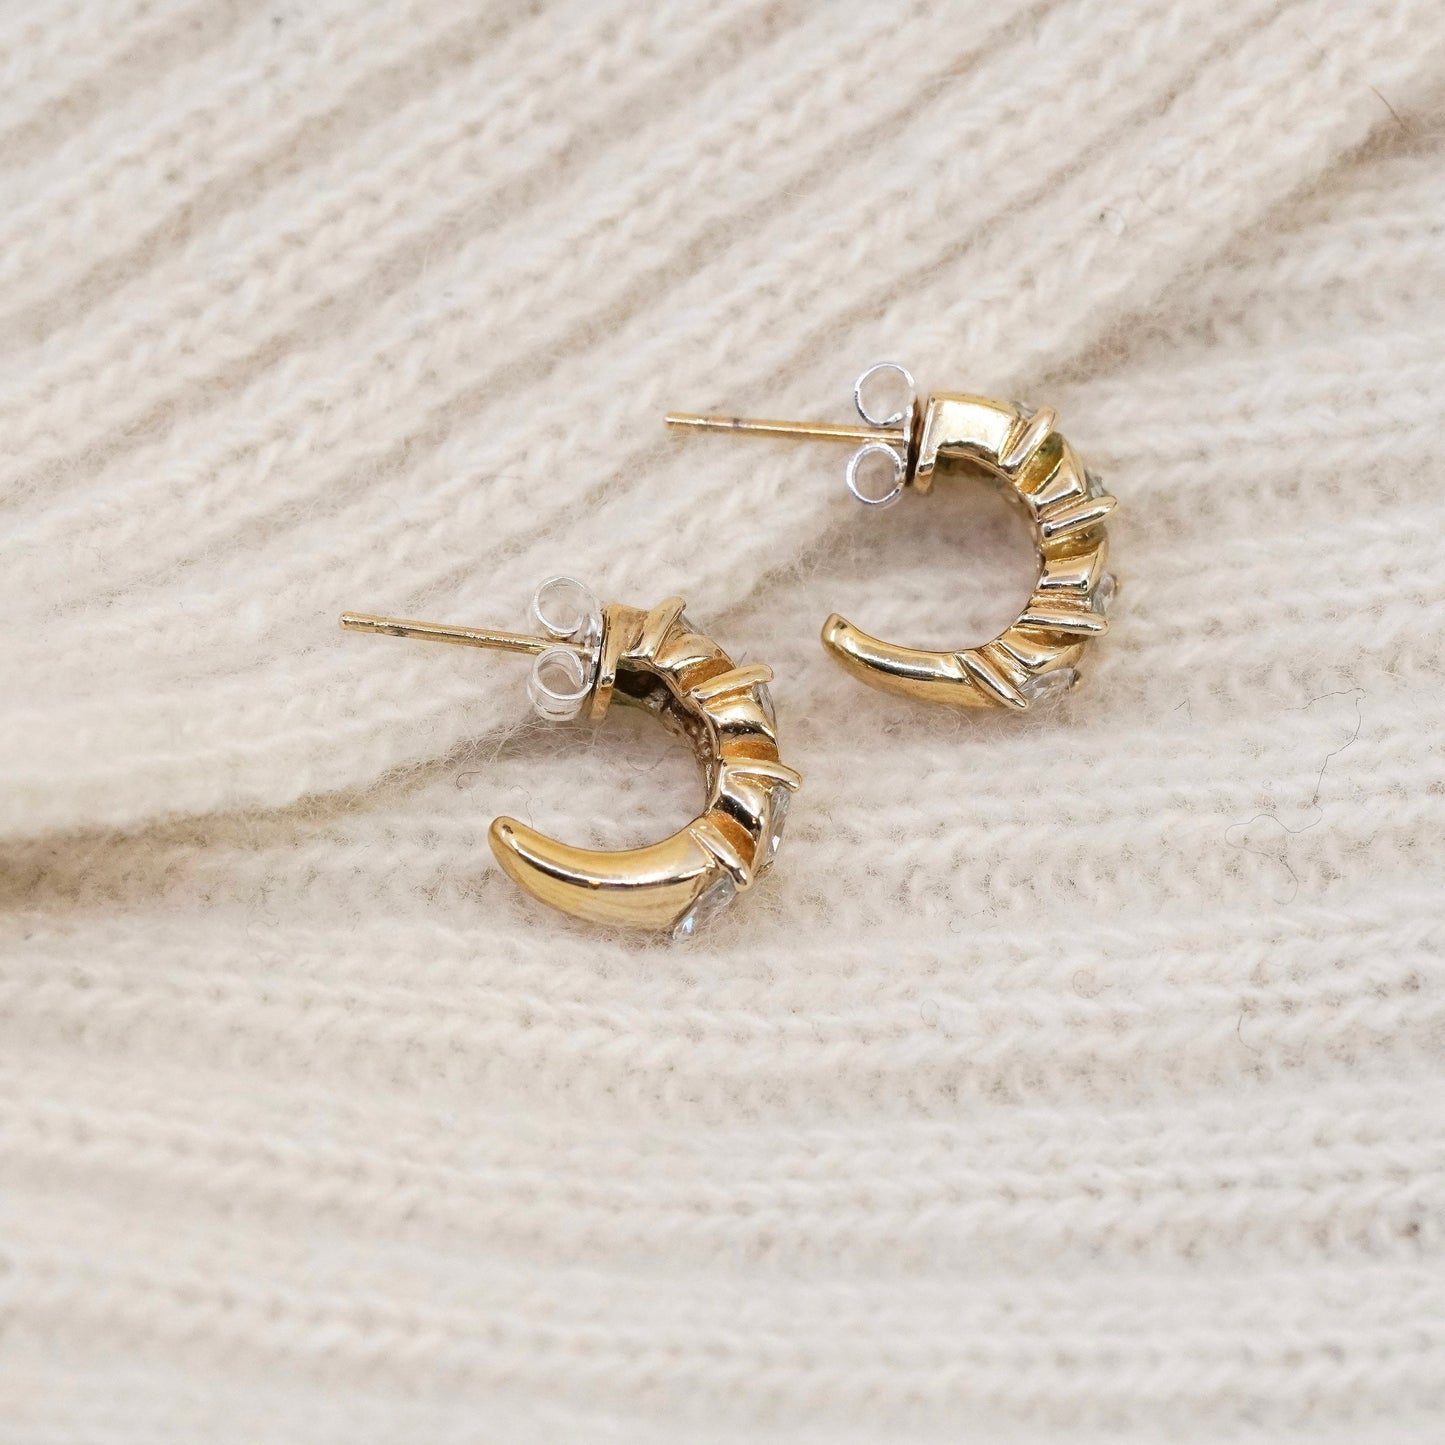 0.5”, Vintage vermeil gold over sterling silver earrings, 925 hoops, huggie cz